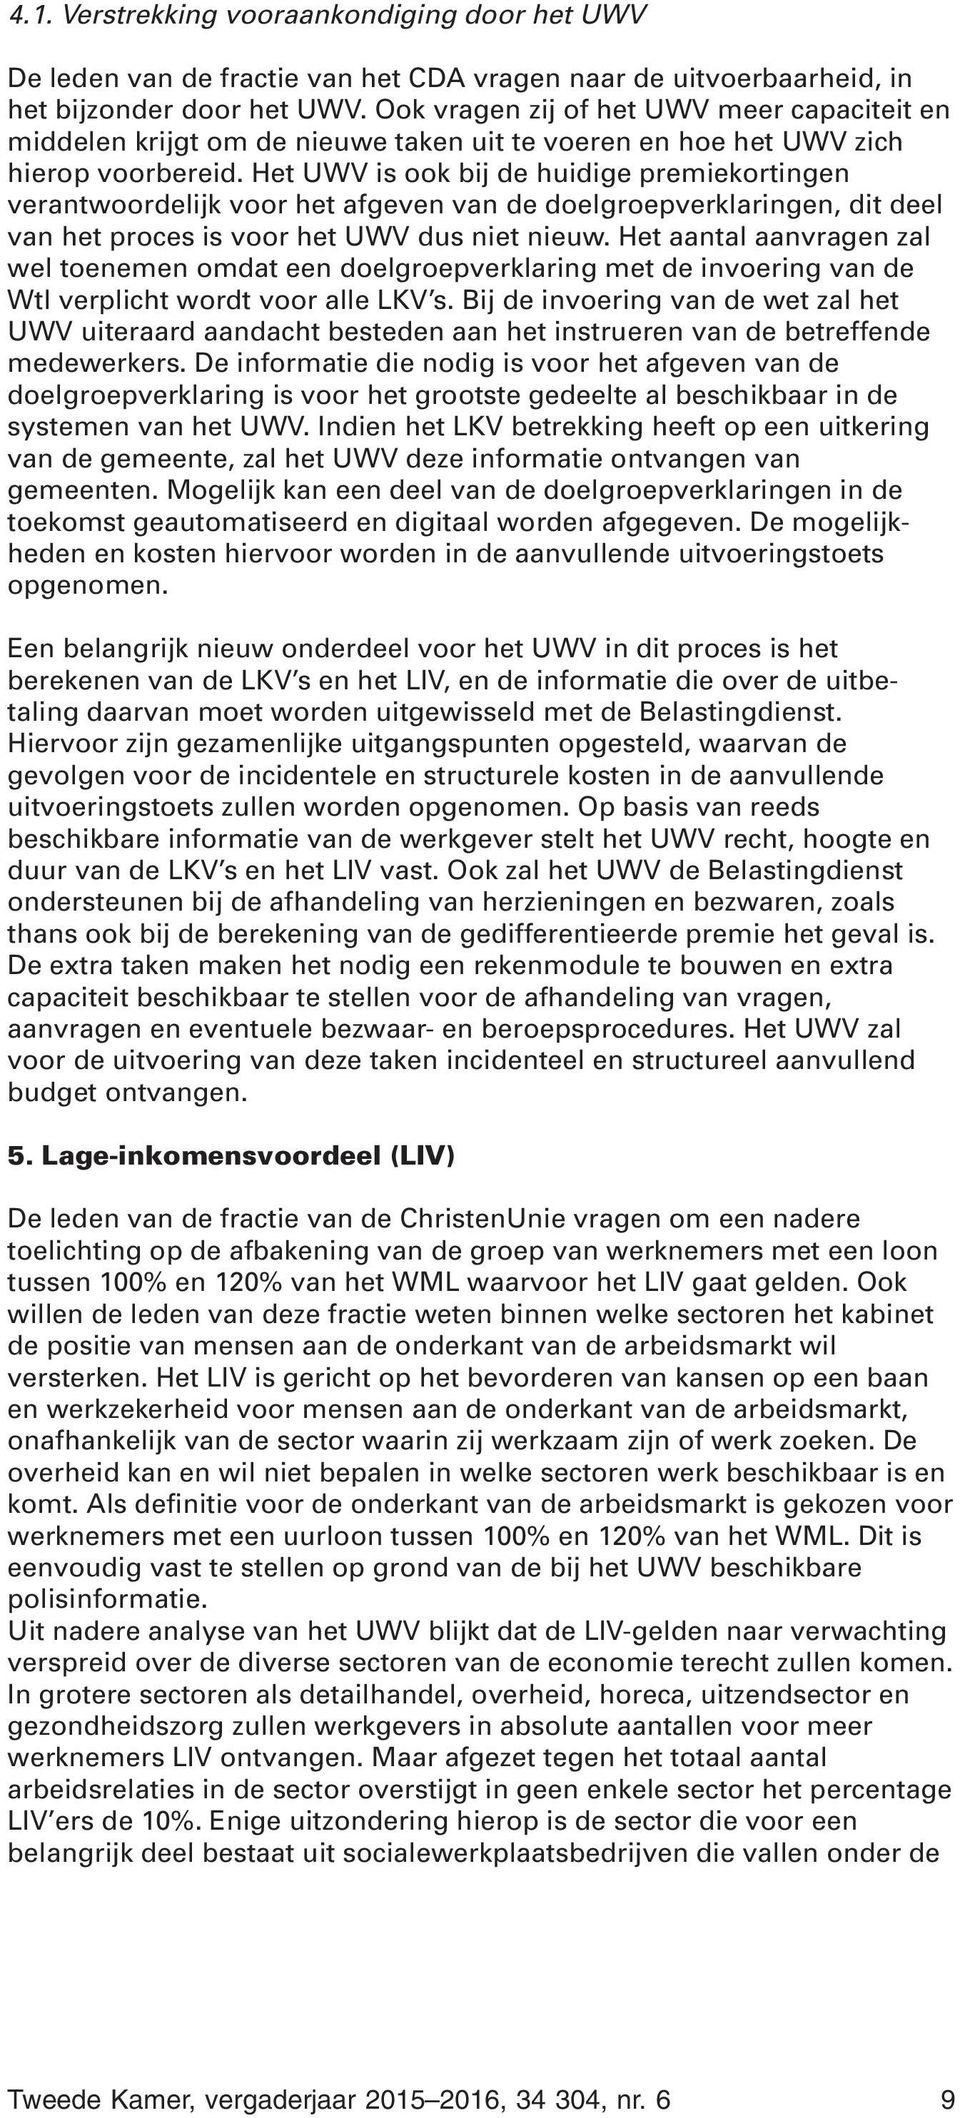 Het UWV is ook bij de huidige premiekortingen verantwoordelijk voor het afgeven van de doelgroepverklaringen, dit deel van het proces is voor het UWV dus niet nieuw.